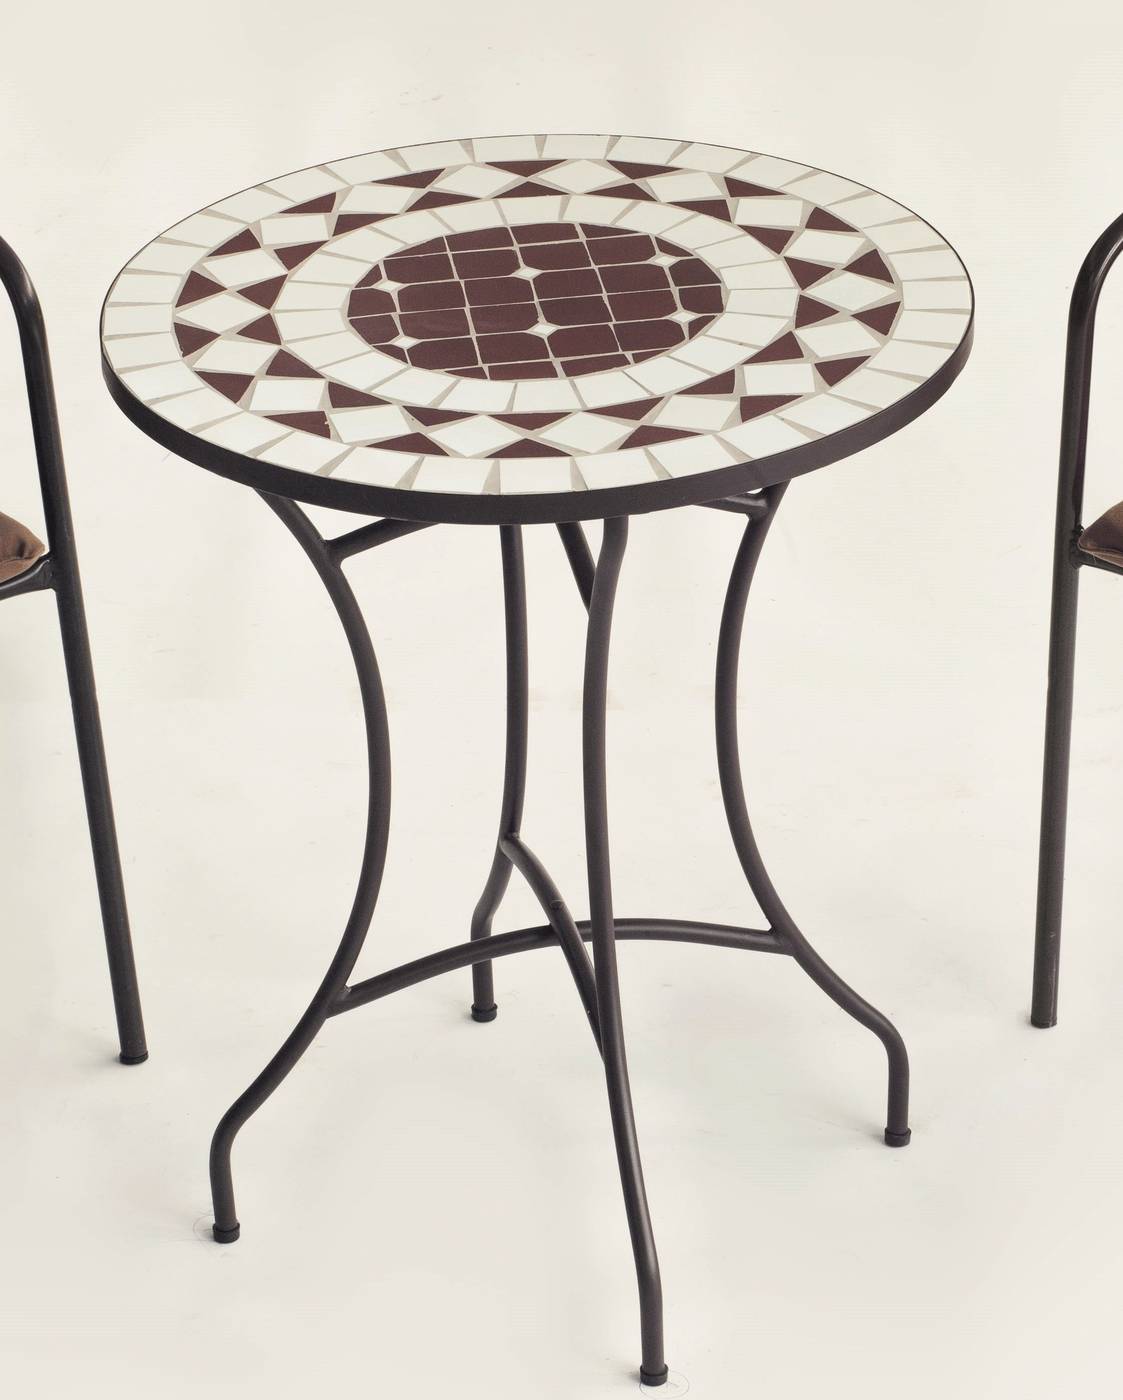 Conjunto Mosaico Oran-Marsel - Mesa de forja color bronce, con tablero mosaico de 60 cm + 2 sillones apilables de aluminio con cojín.